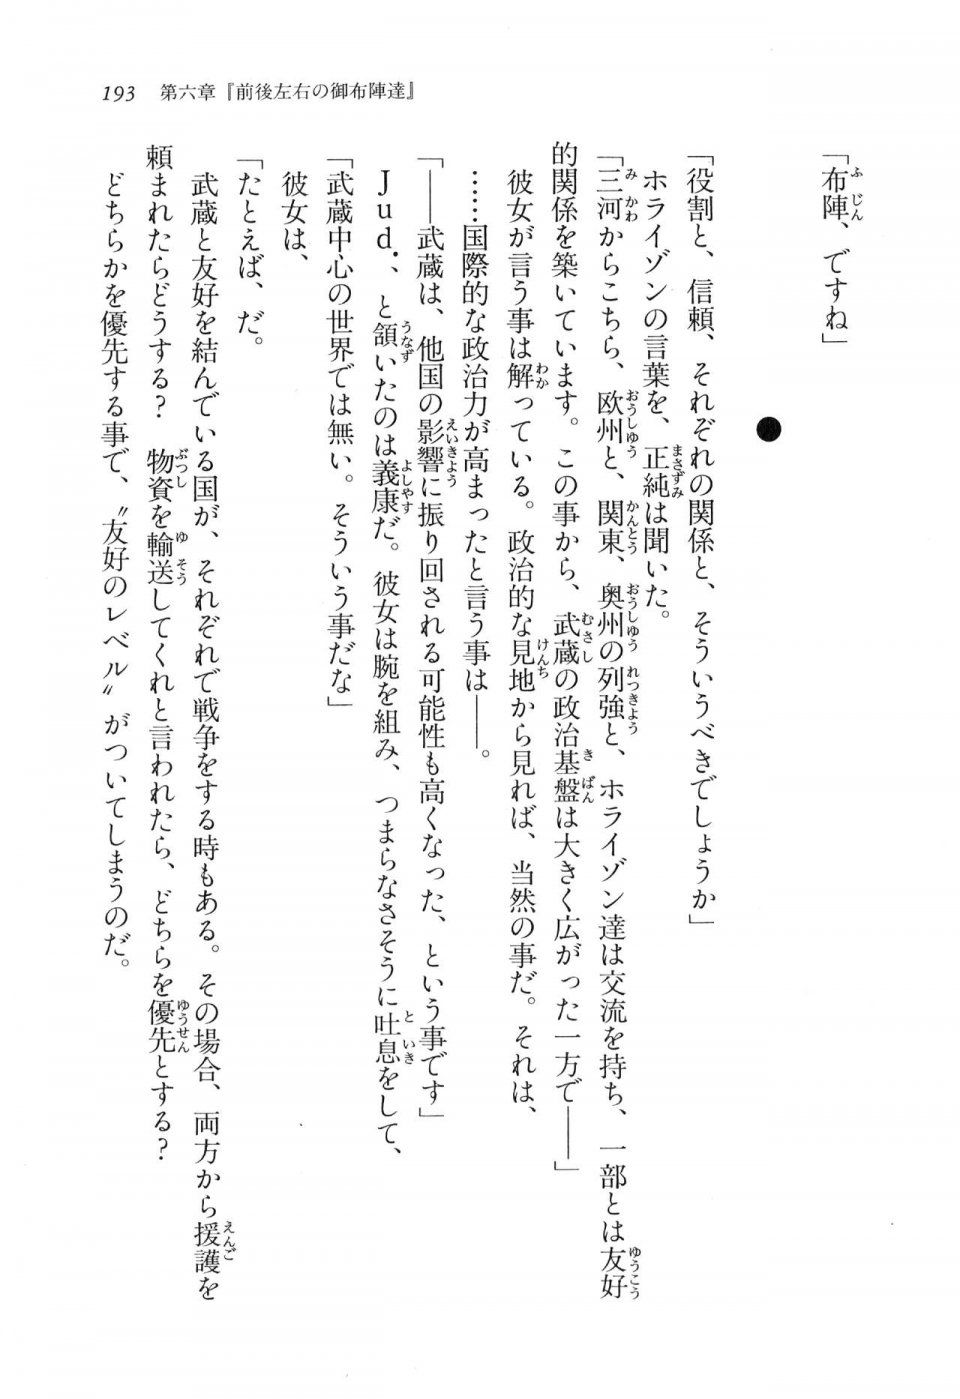 Kyoukai Senjou no Horizon LN Vol 11(5A) - Photo #193